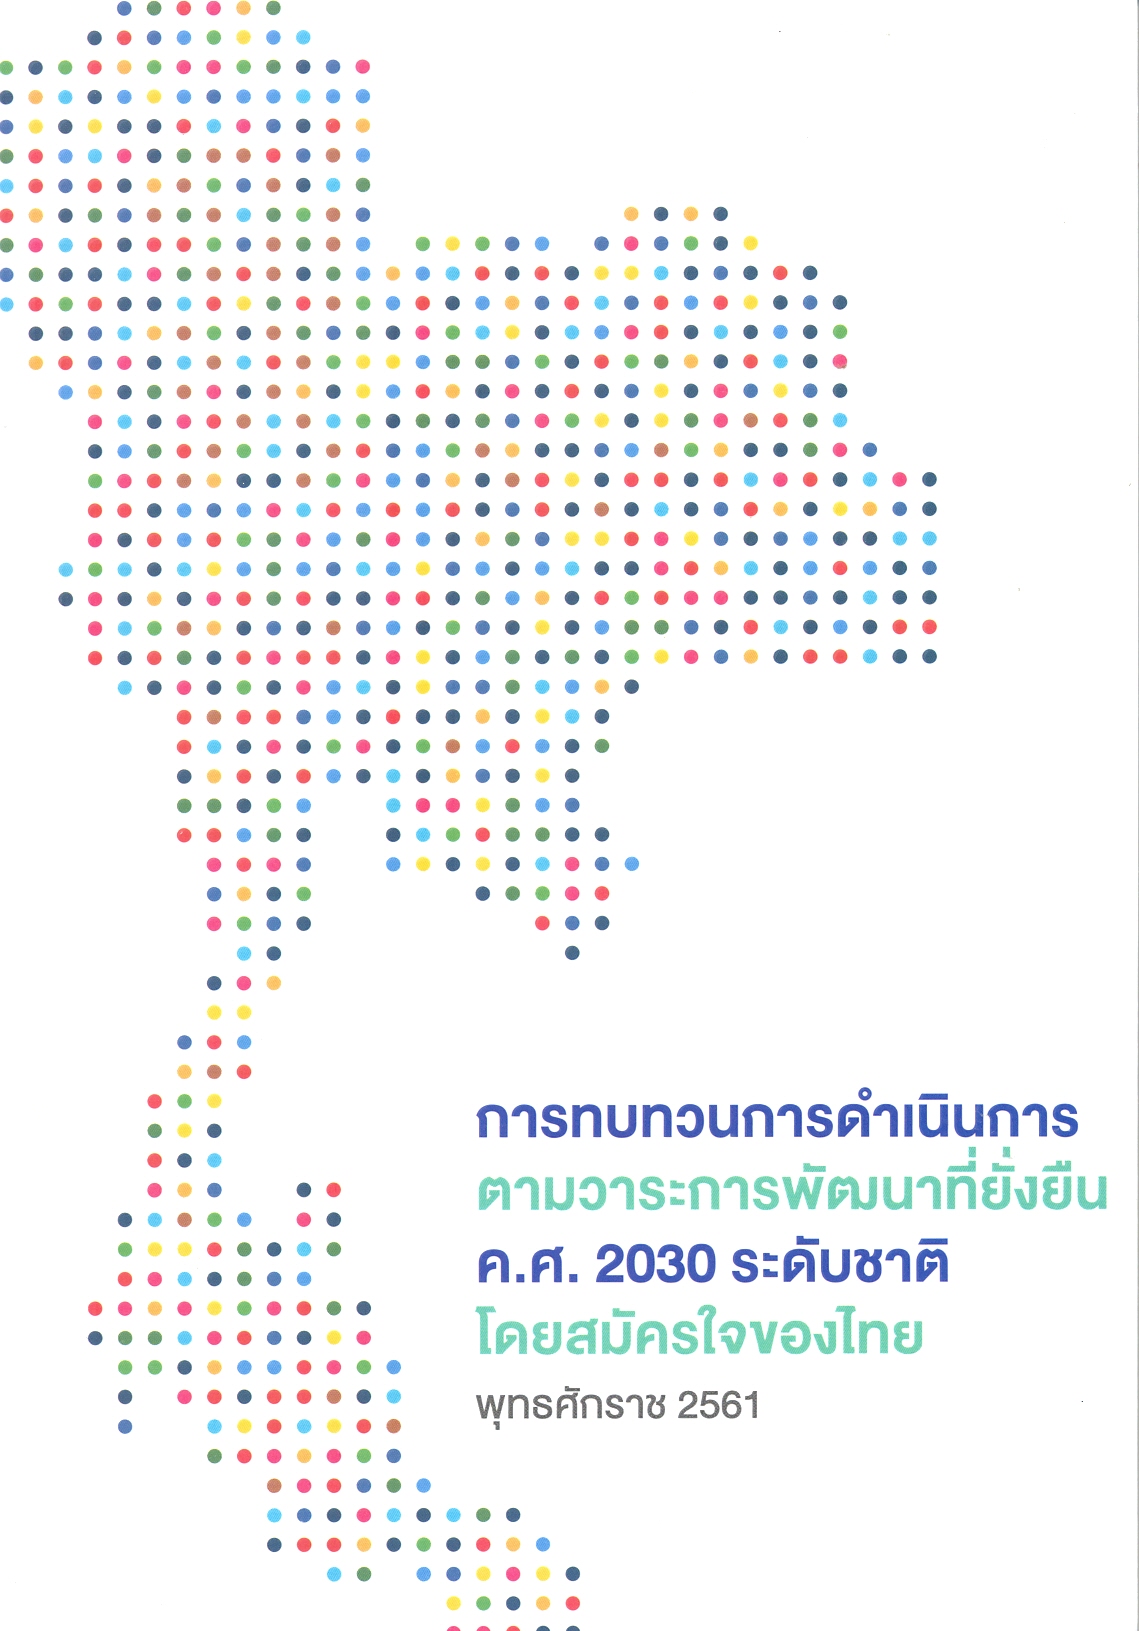 การทบทวนการดำเนินการตามวาระการพัฒนาที่ยั่งยืน ค.ศ. 2030 ระดับชาติโดยสมัครใจของไทย พุทธศักราช 2561